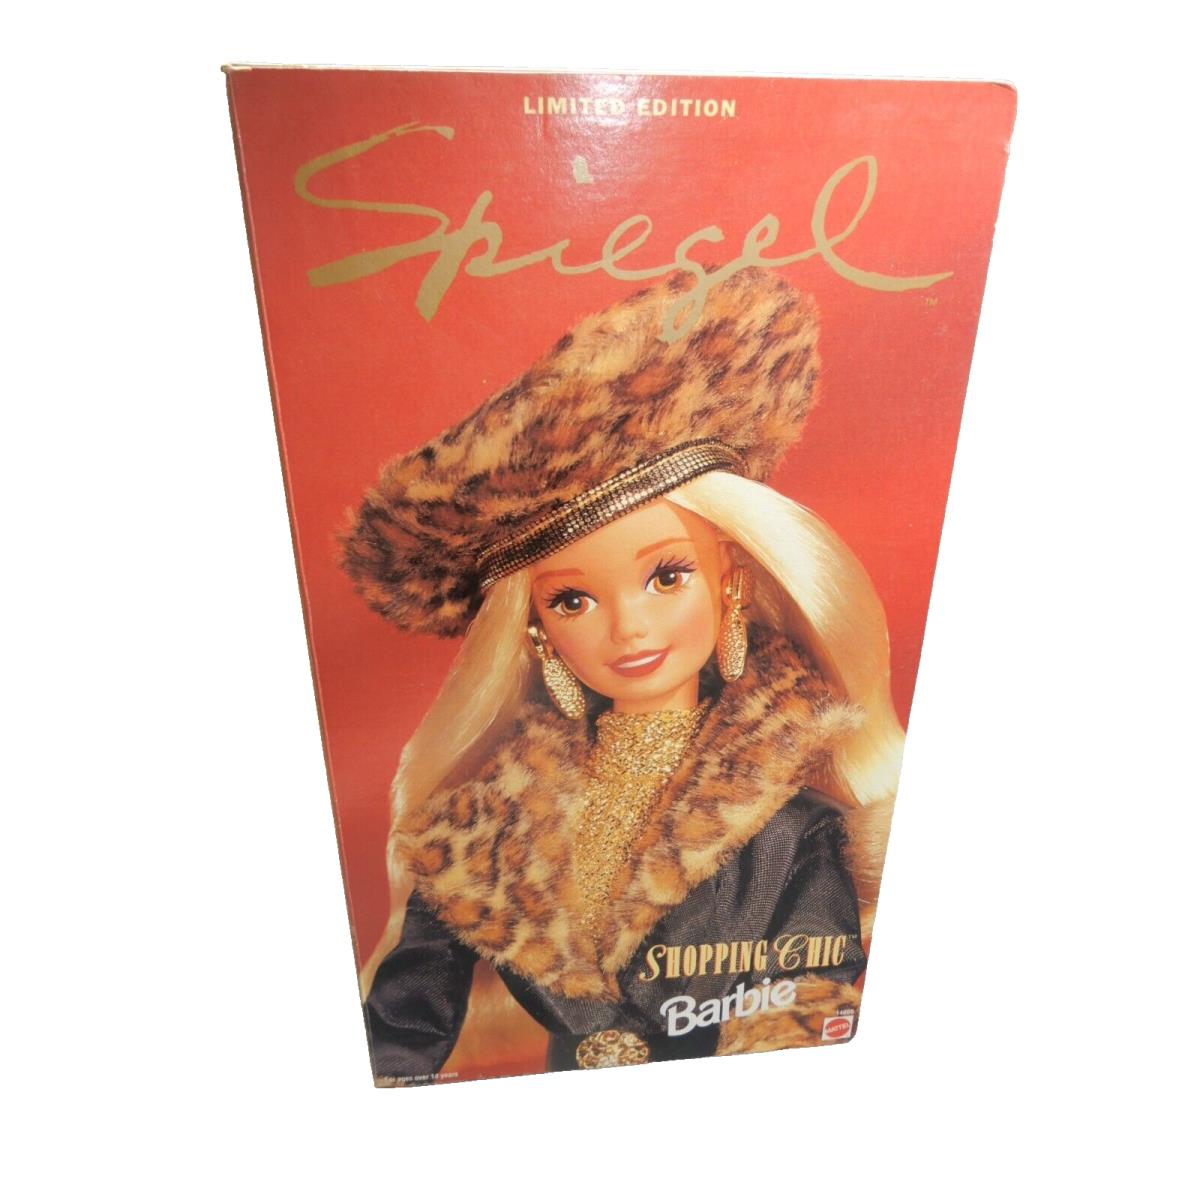 Blond Barbie Spiegel Shopping Chic Doll 1995 Mattel 14009 W/dog